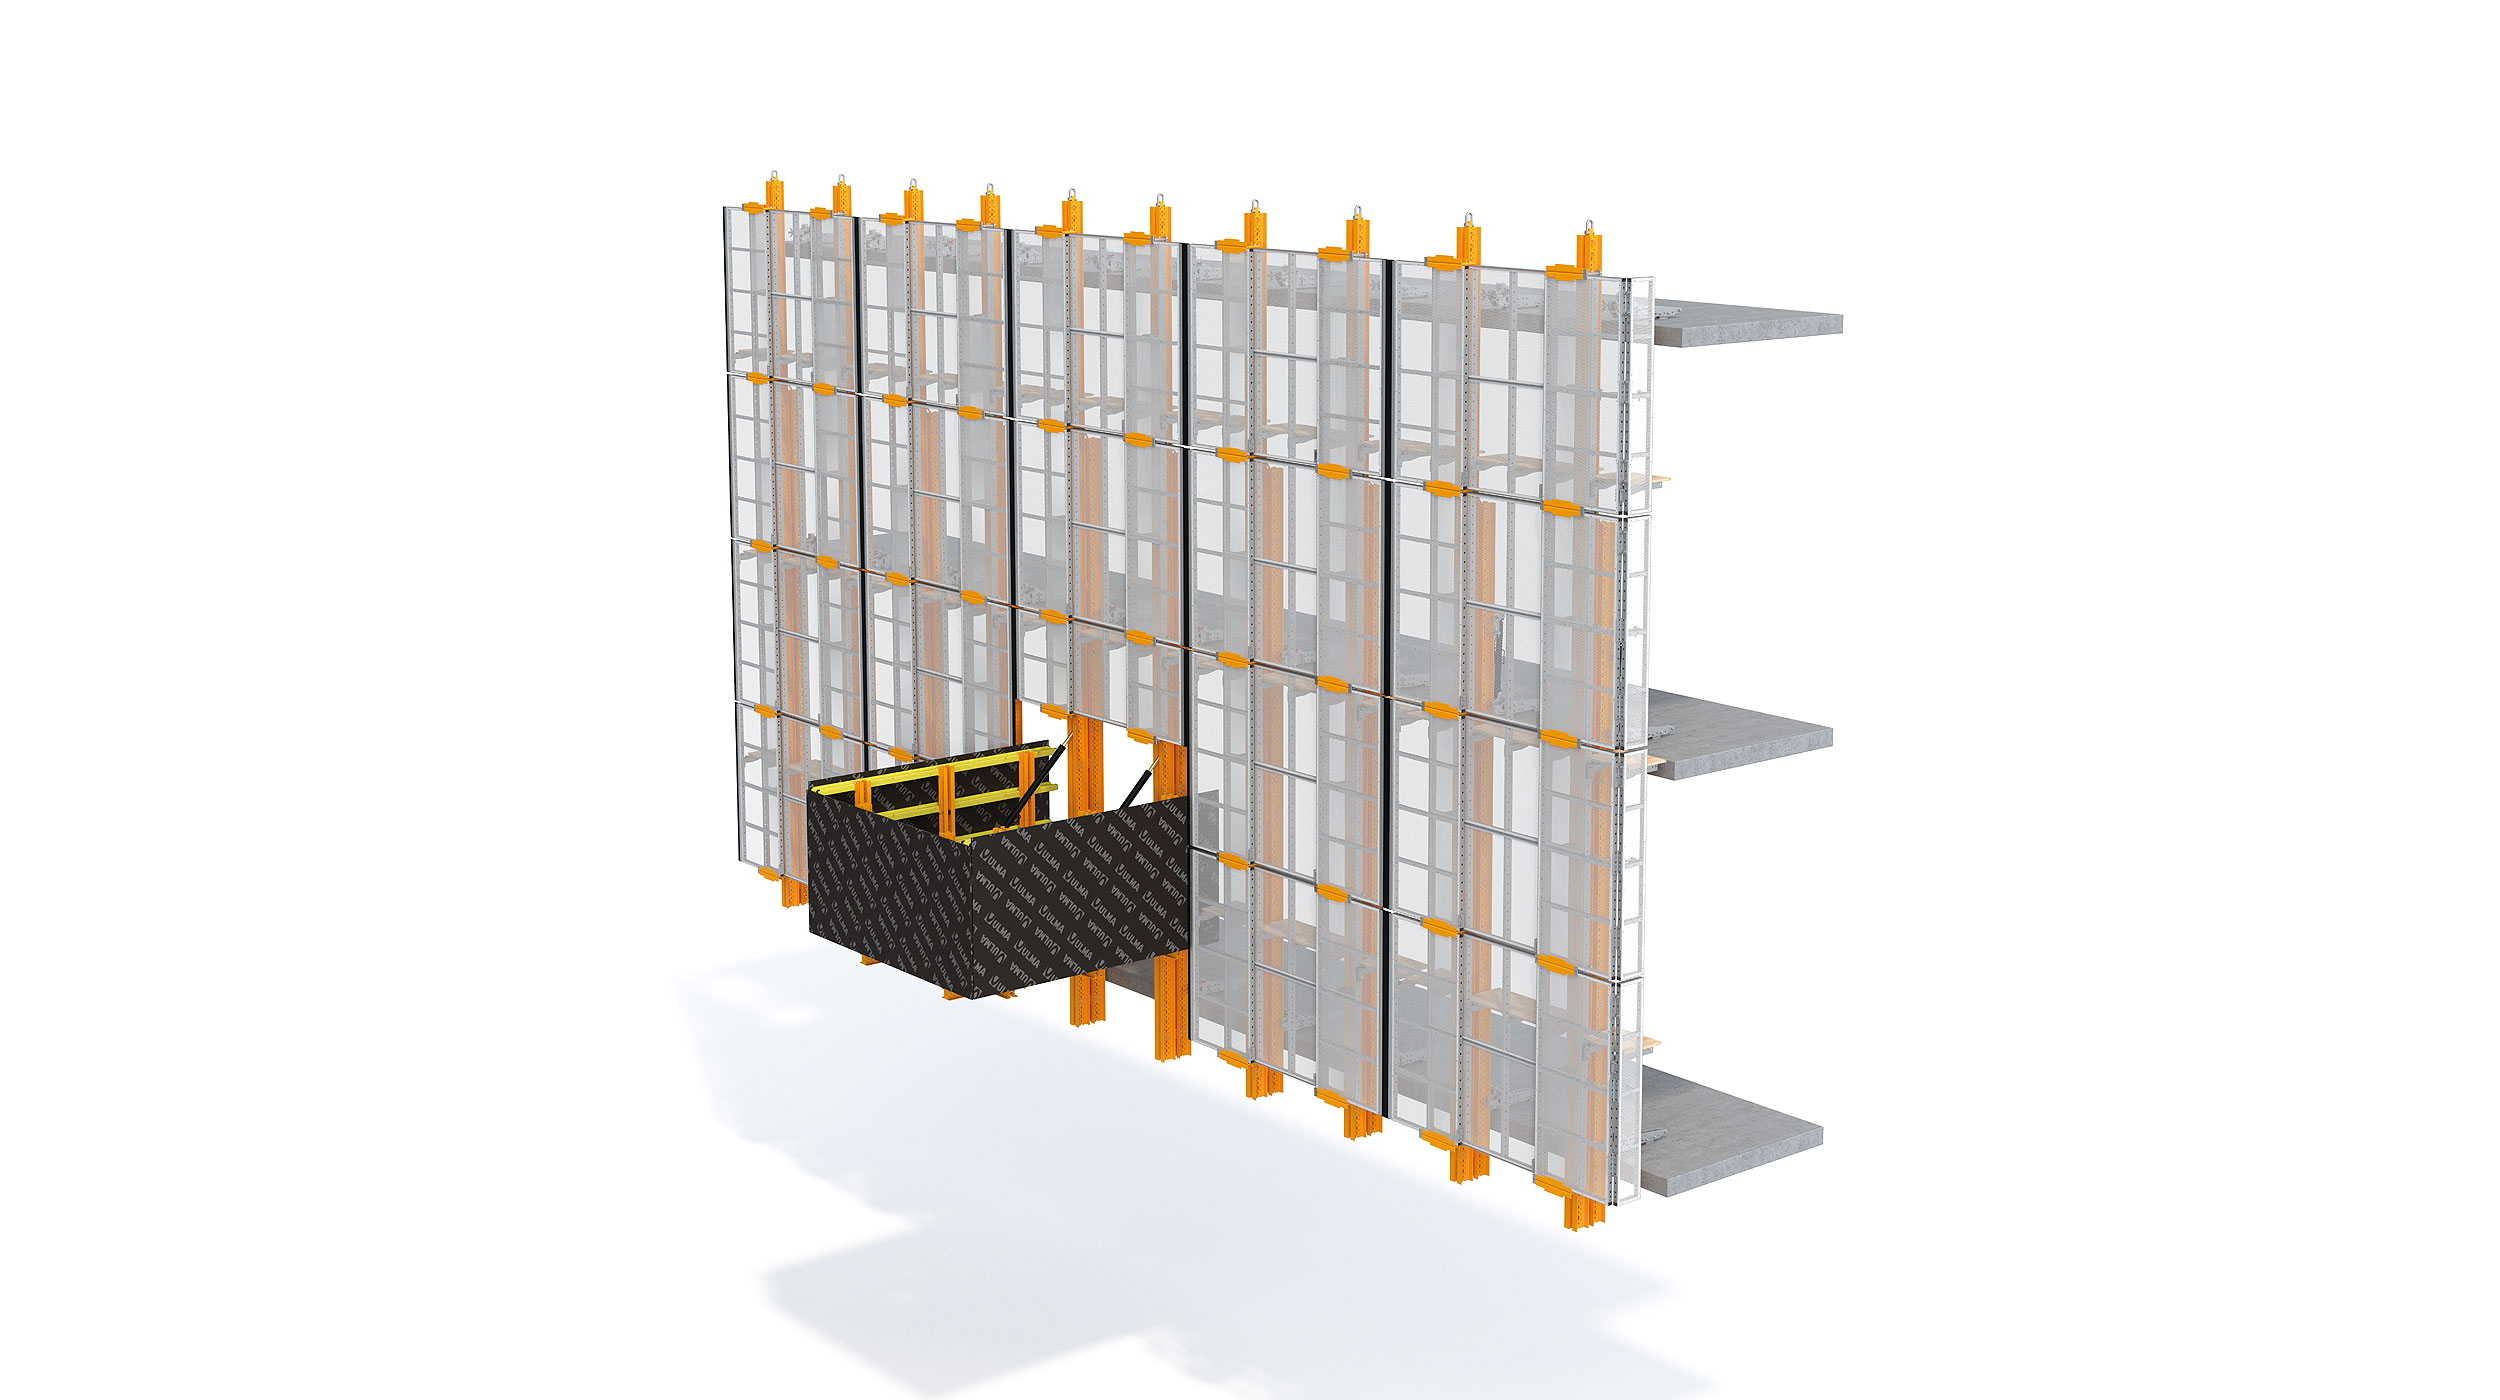 Pantalla de protección perimetral de gran flexibilidad, que se adapta a cualquier geometría o necesidad de configuración. Indicada para edificios de gran altura. El sistema puede elevarse de manera hidráulica o con grúa.